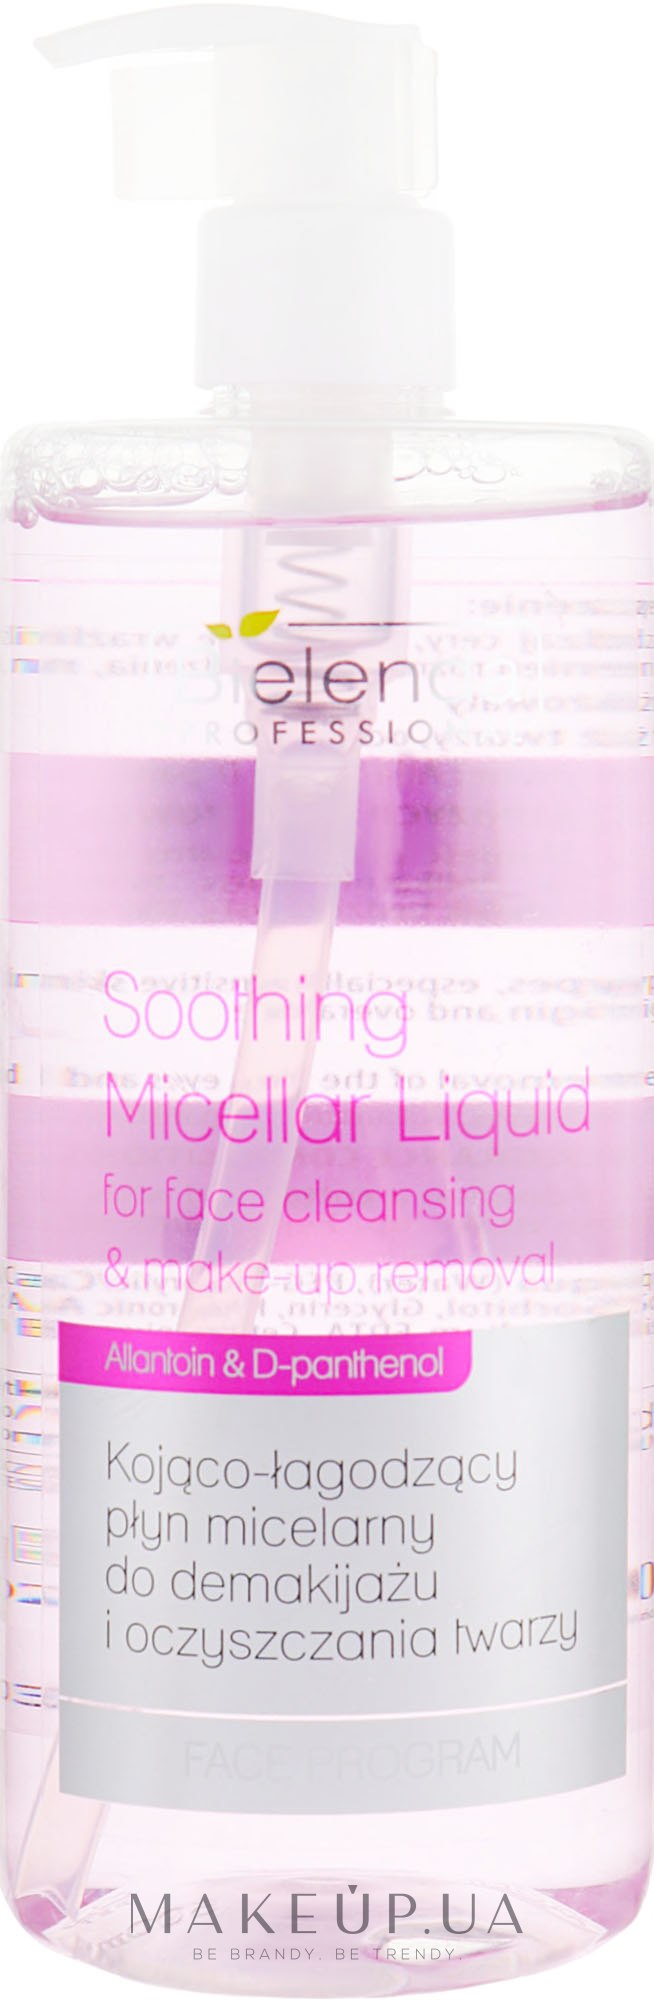 Заспокійлива міцелярна рідина для зняття макіяжу - Bielenda Professional Program Face Soothing Micellar Liquid — фото 500ml